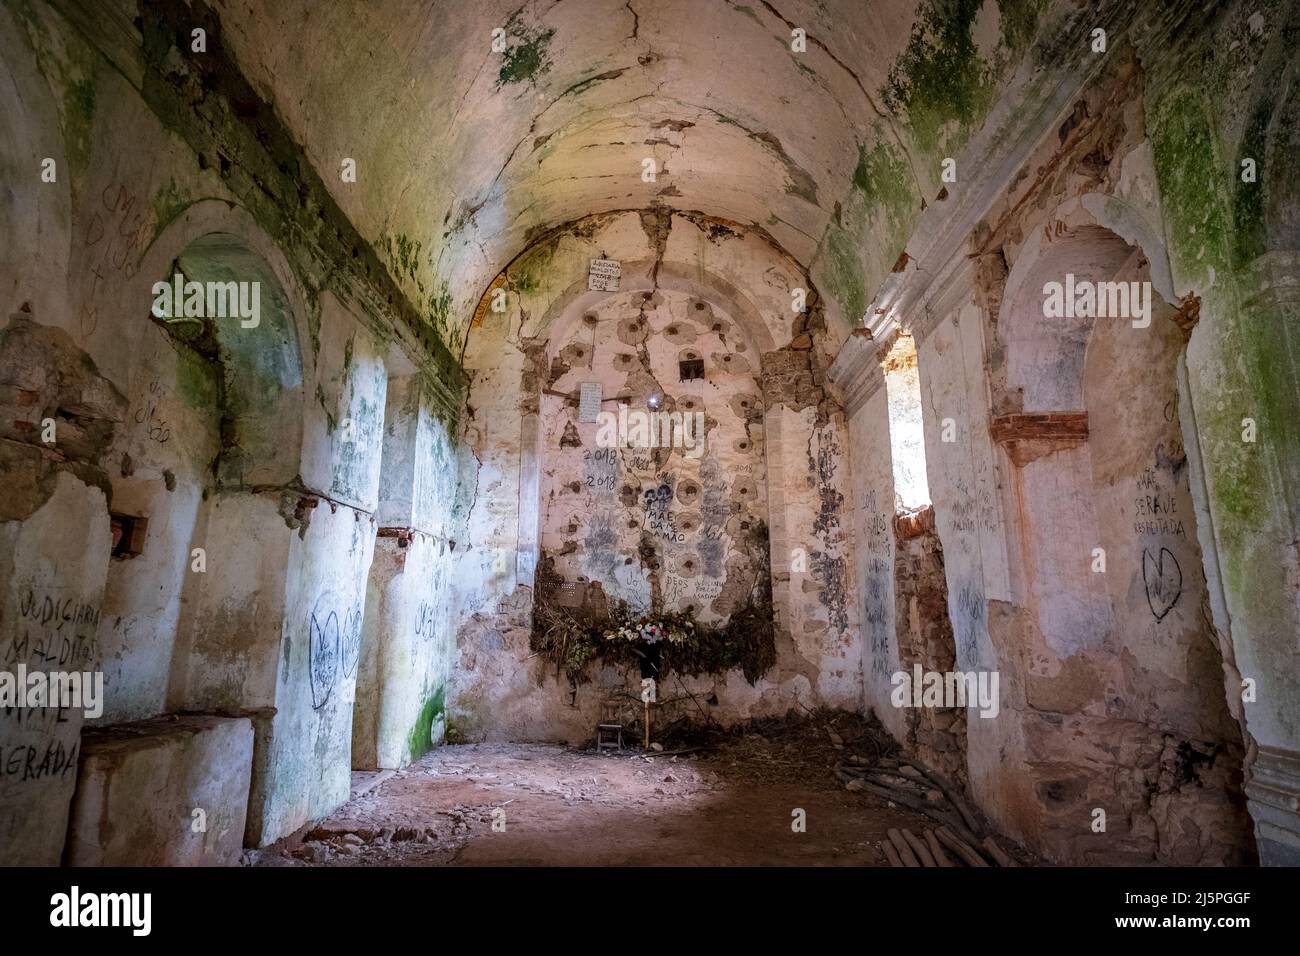 Ruined interior of the Convento de Nossa Senhora do Desterro, along the Via Algarviana, Monchique, Portugal Stock Photo